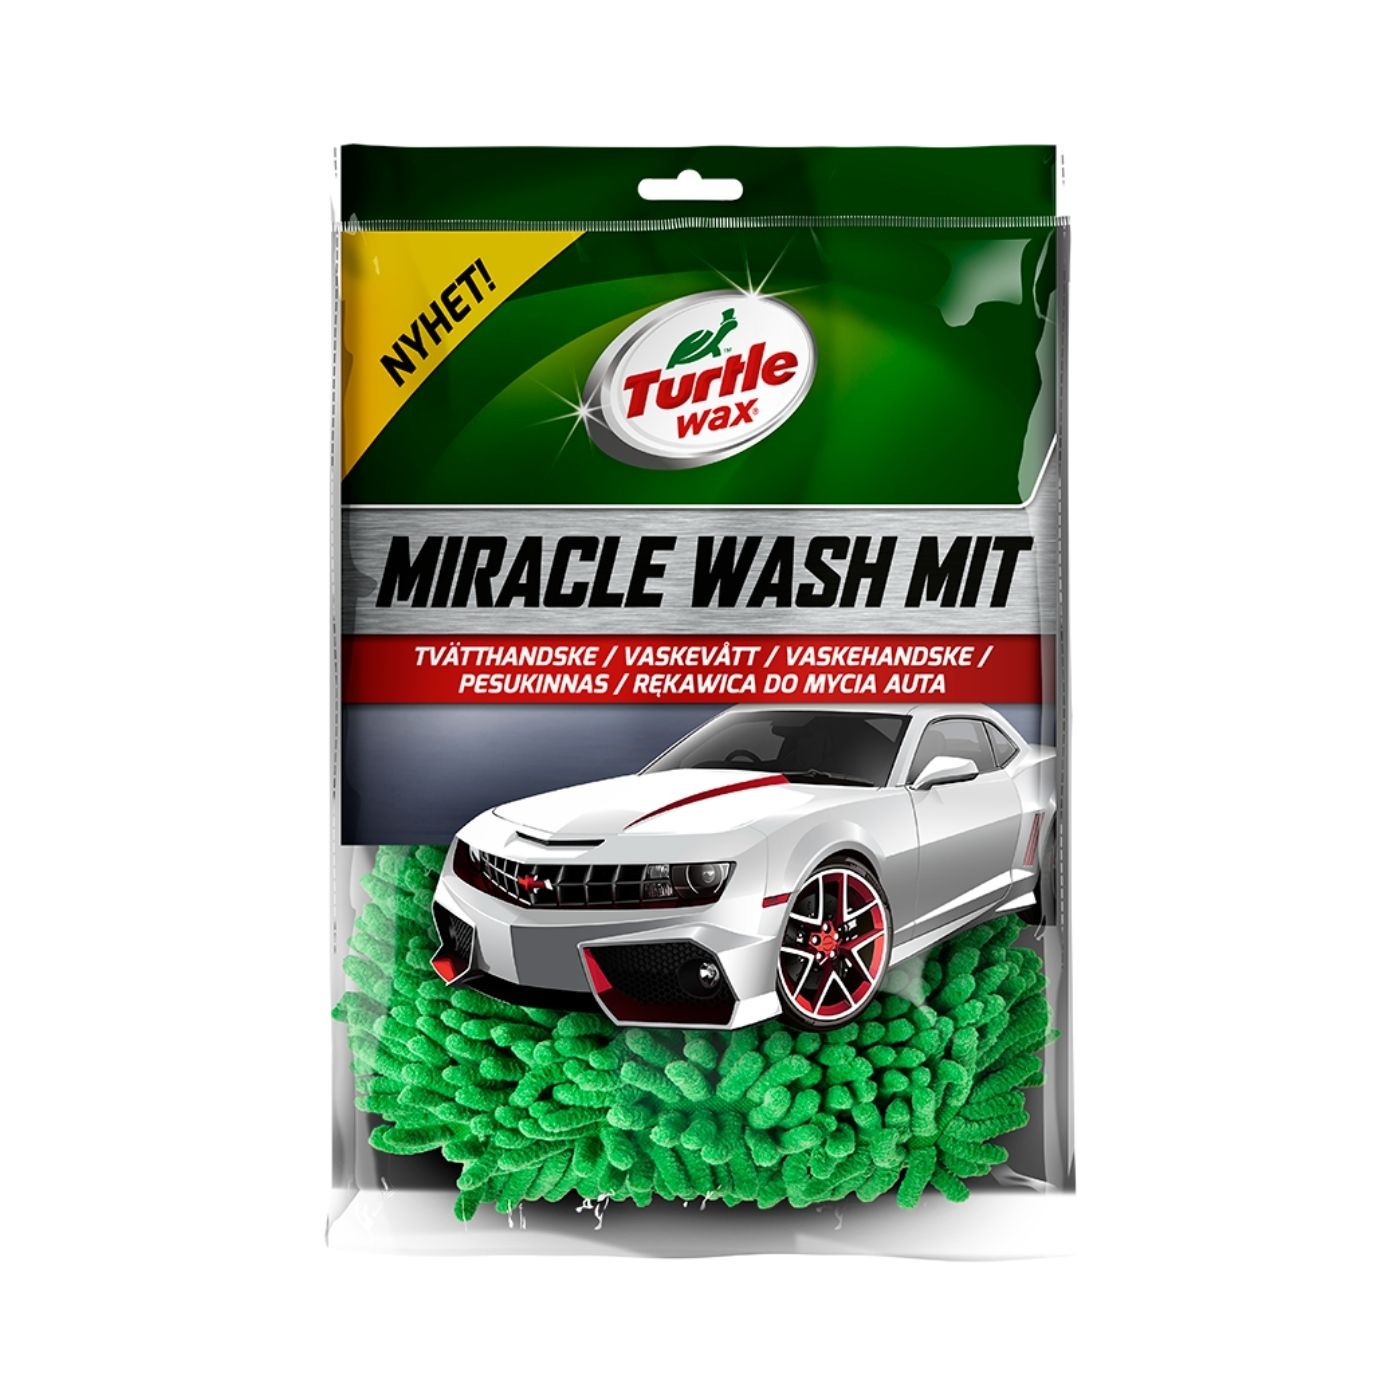 Tvätthandske Turtle Wax Miracle Wash Mit